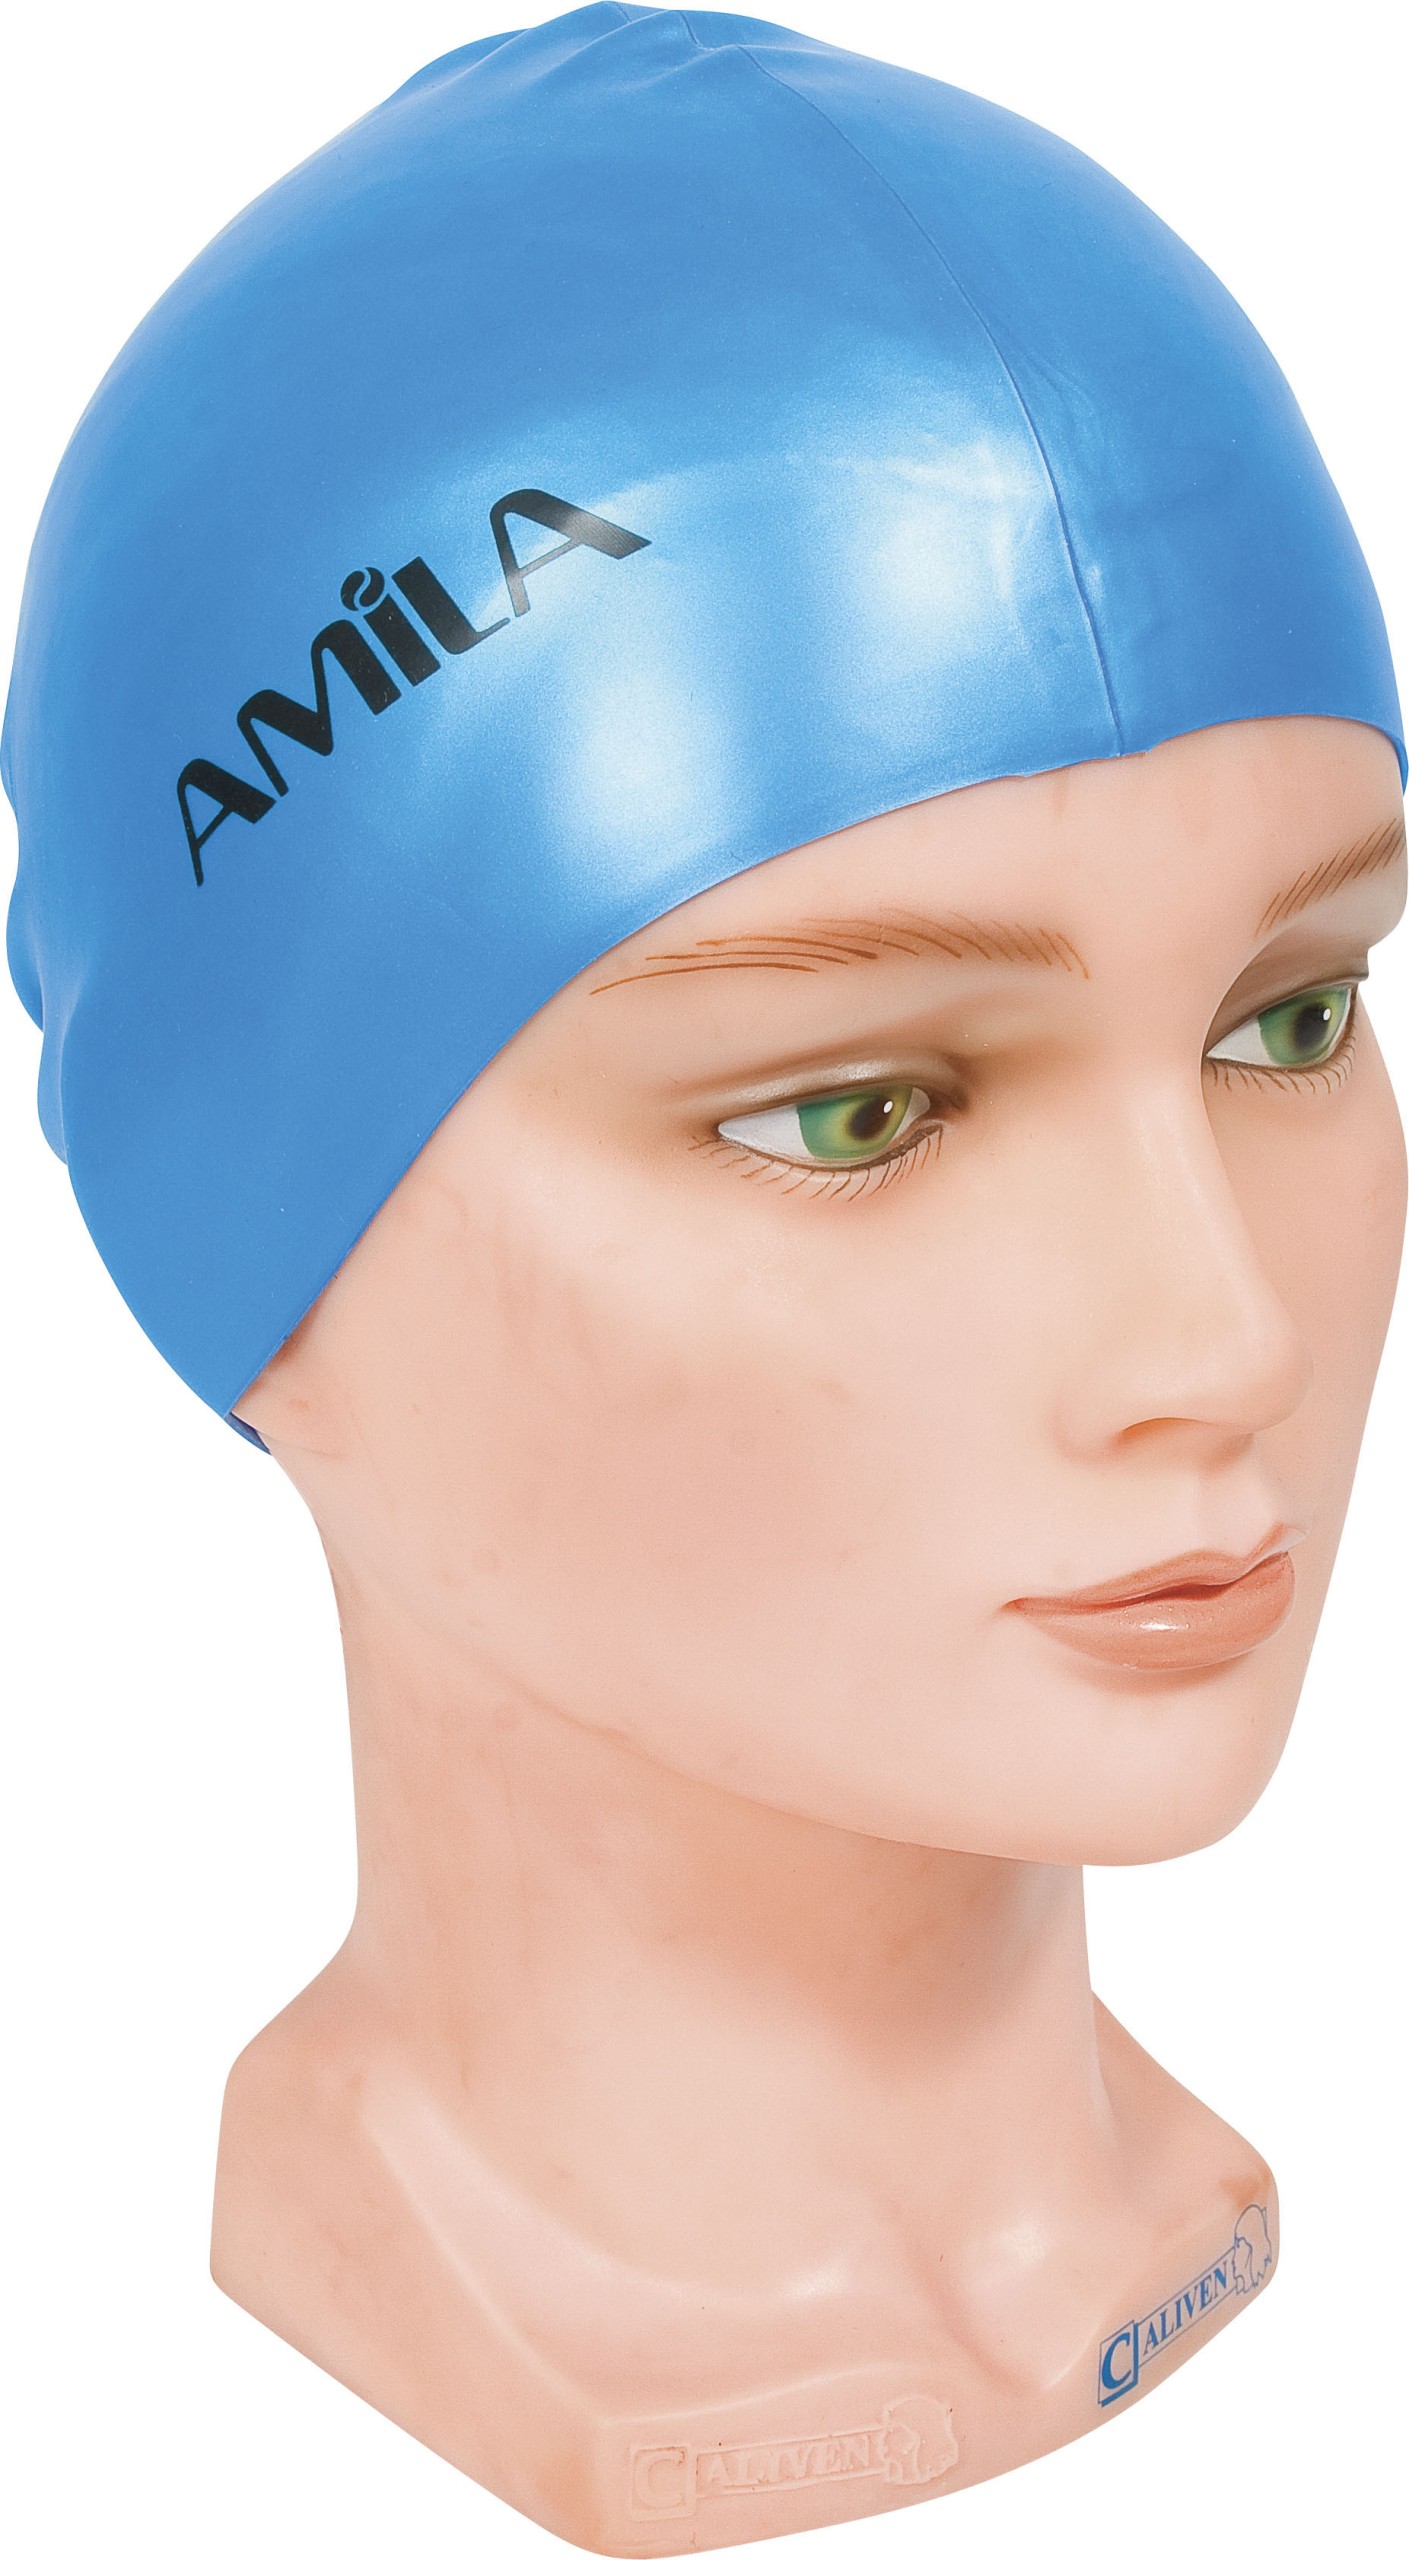 Σκουφάκι Κολύμβησης AMILA Basic Μπλε Ανοιχτό